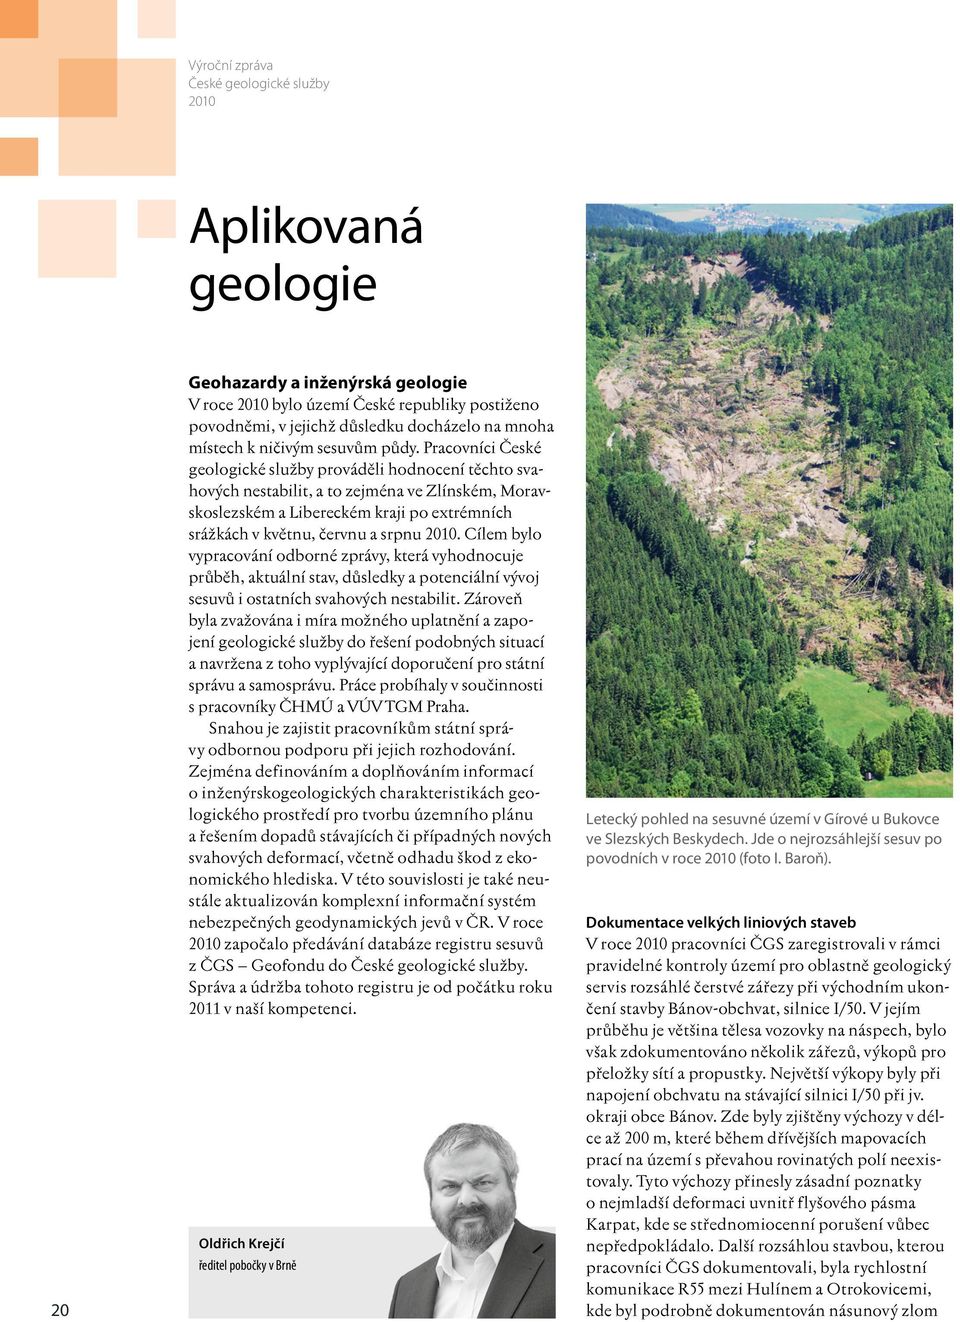 Pracovníci České geologické služby prováděli hodnocení těchto svahových nestabilit, a to zejména ve Zlínském, Moravskoslezském a Libereckém kraji po extrémních srážkách v květnu, červnu a srpnu 2010.